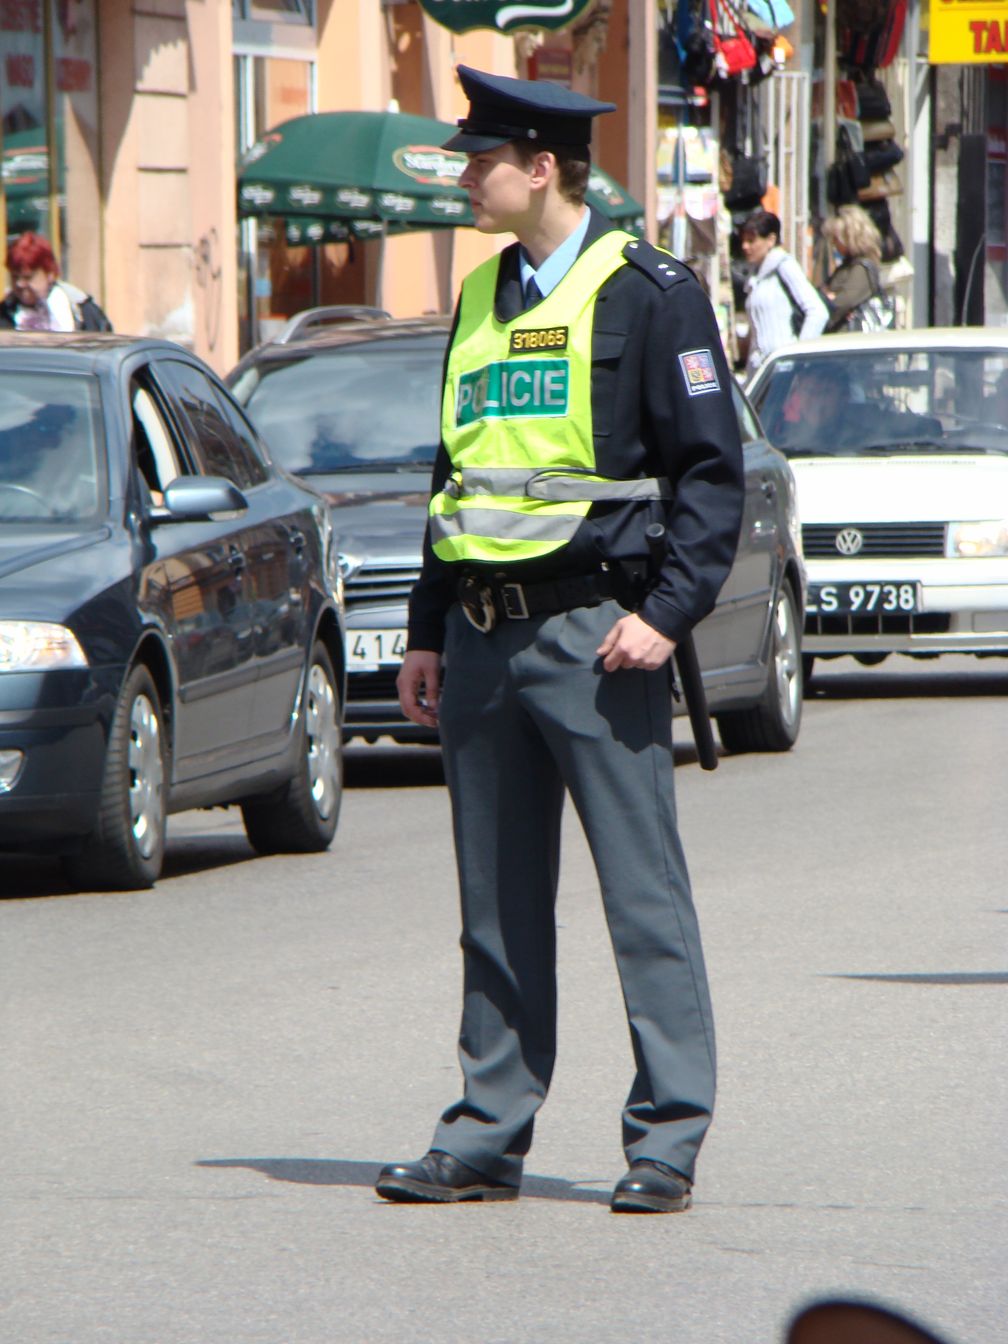 Polizei der Tschechischen Republik: Polizist der staatlichen Polizei in Uniform